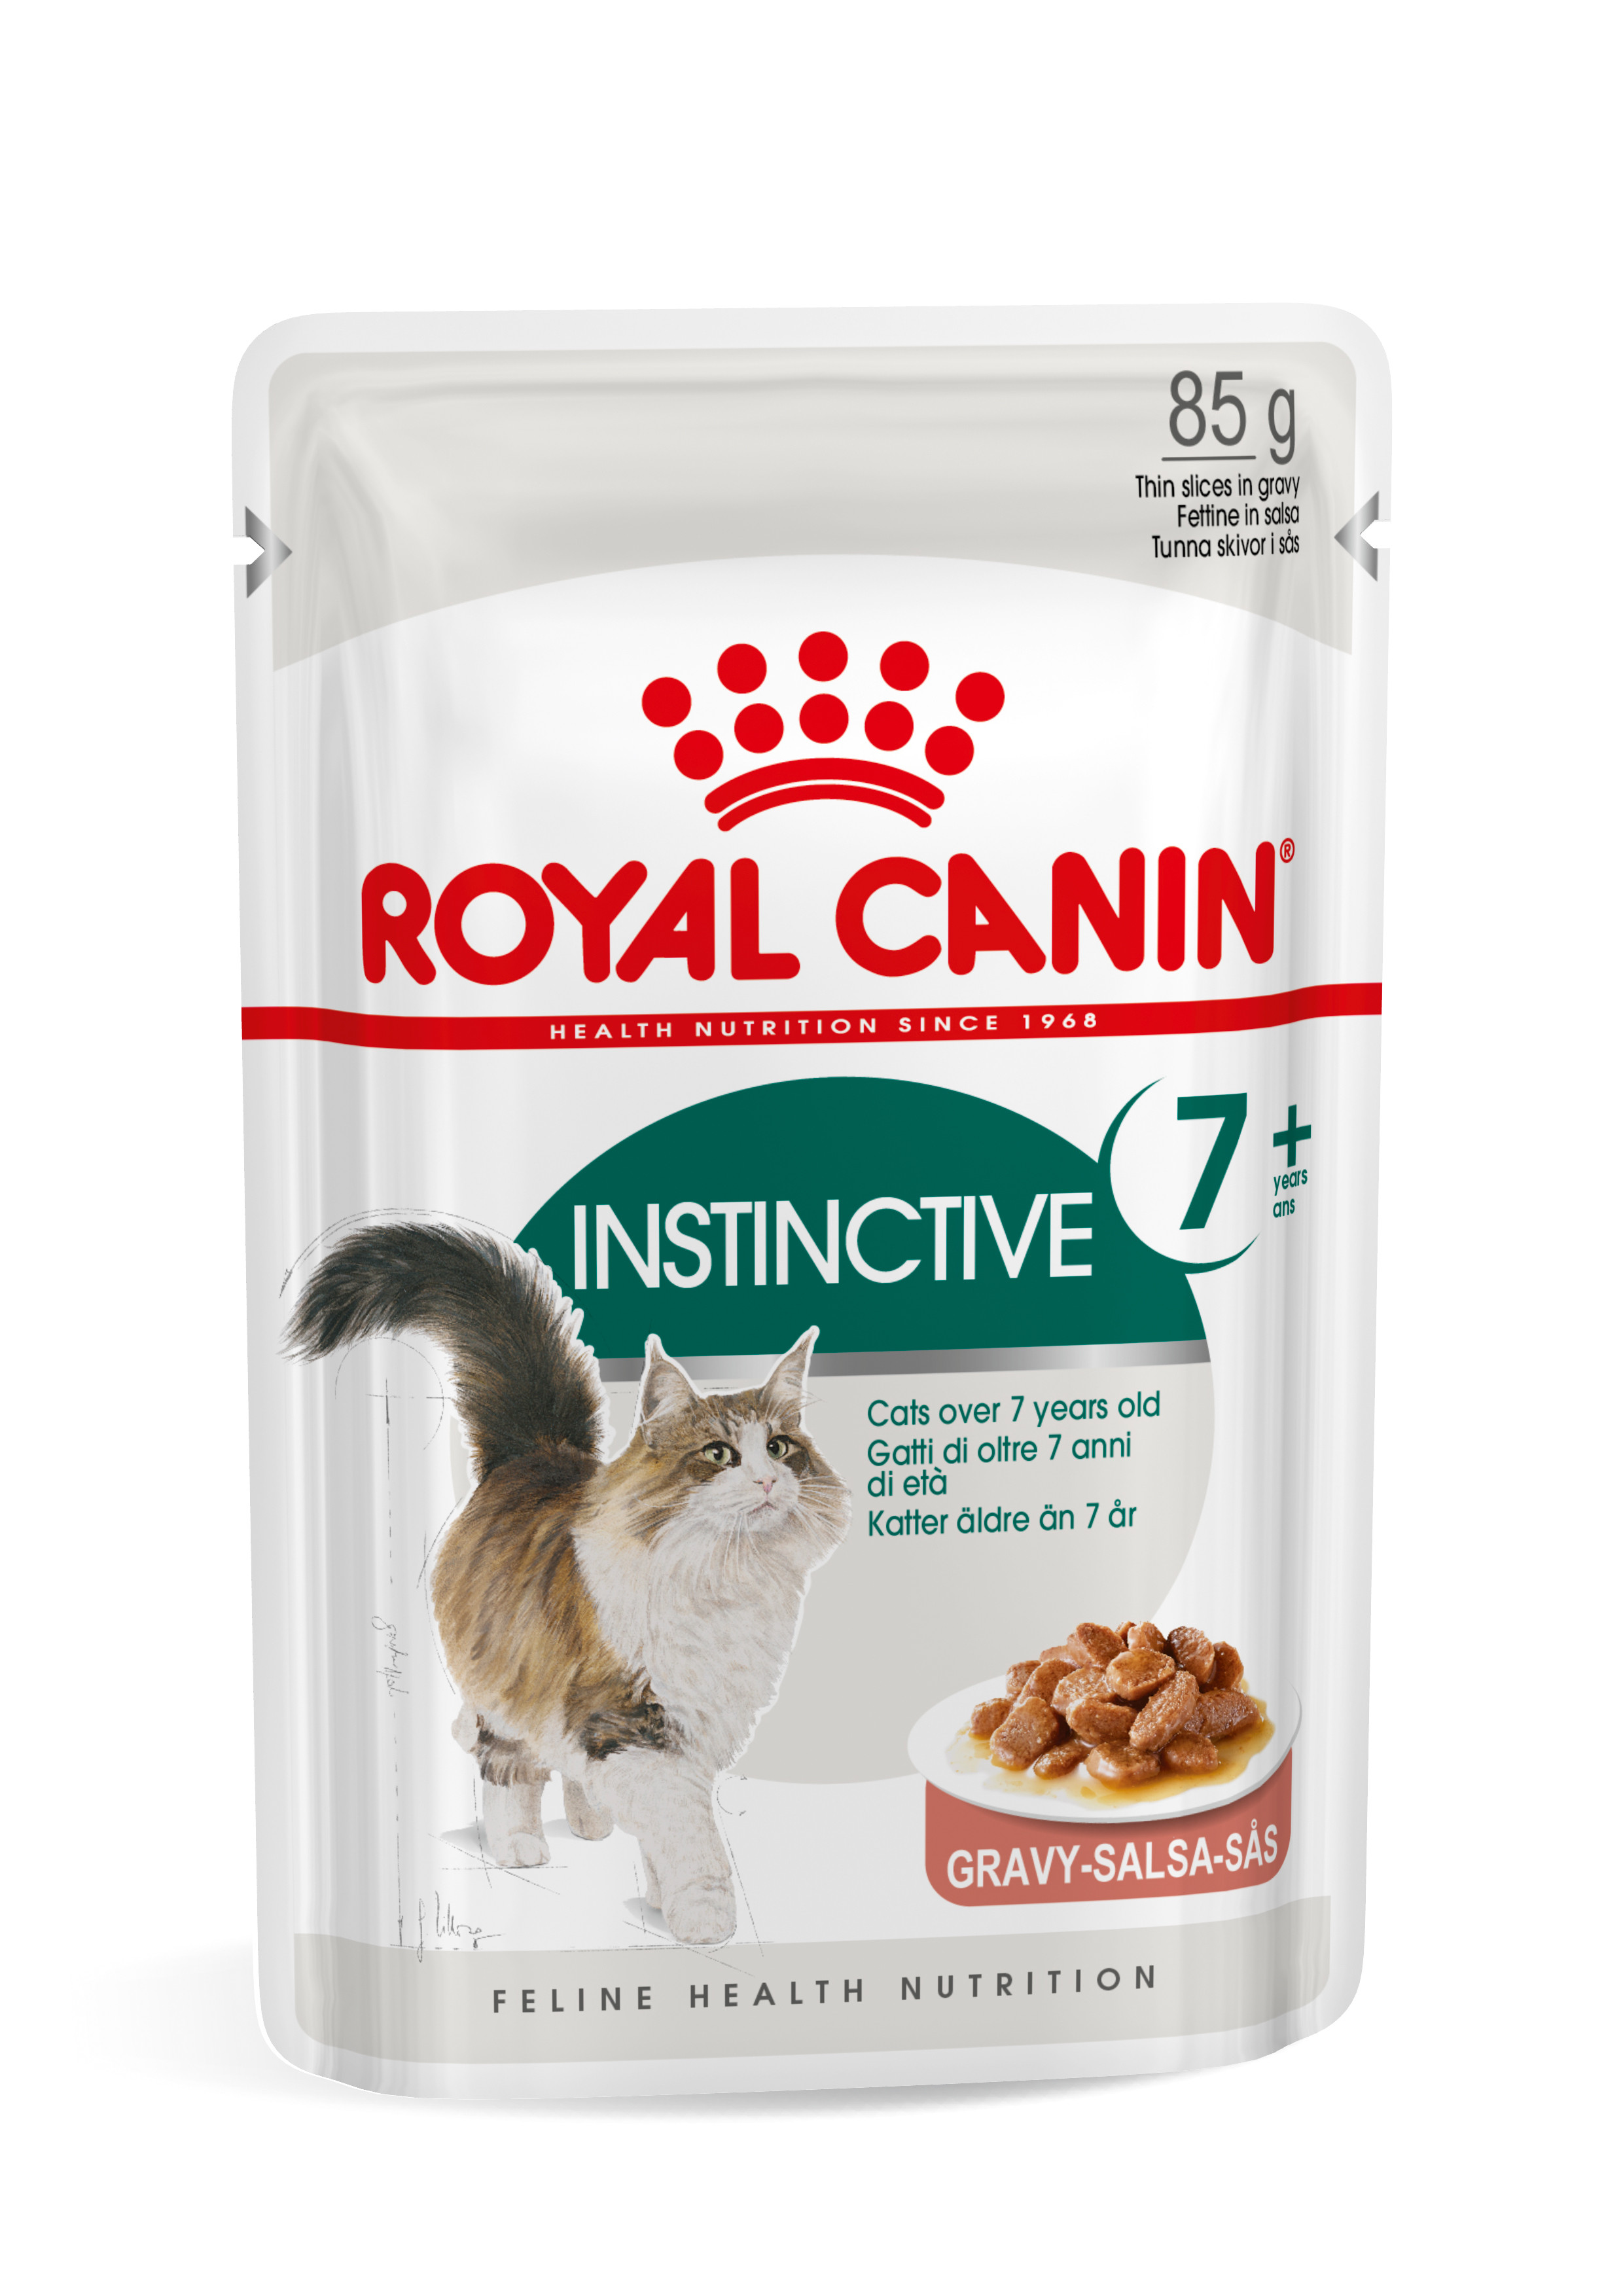 Royal Canin Instinctive 7+ cibo umido per gatto 12x